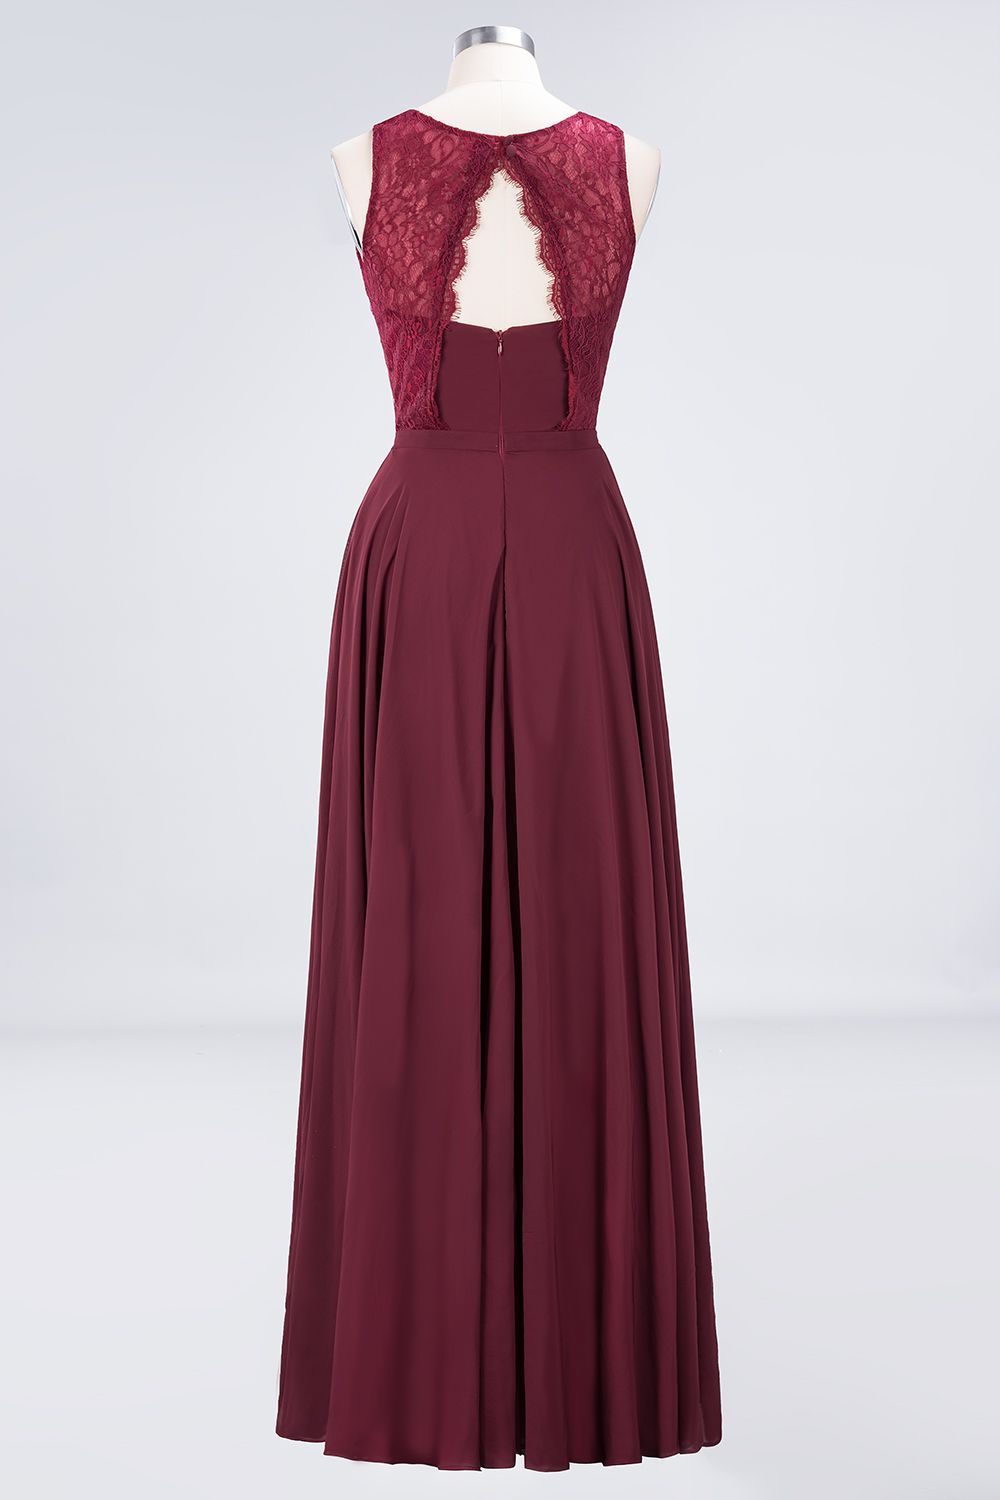 Load image into Gallery viewer, Long A-Line Chiffon Lace Jewel Sleeveless Burgundy Bridesmaid Dress-BIZTUNNEL
